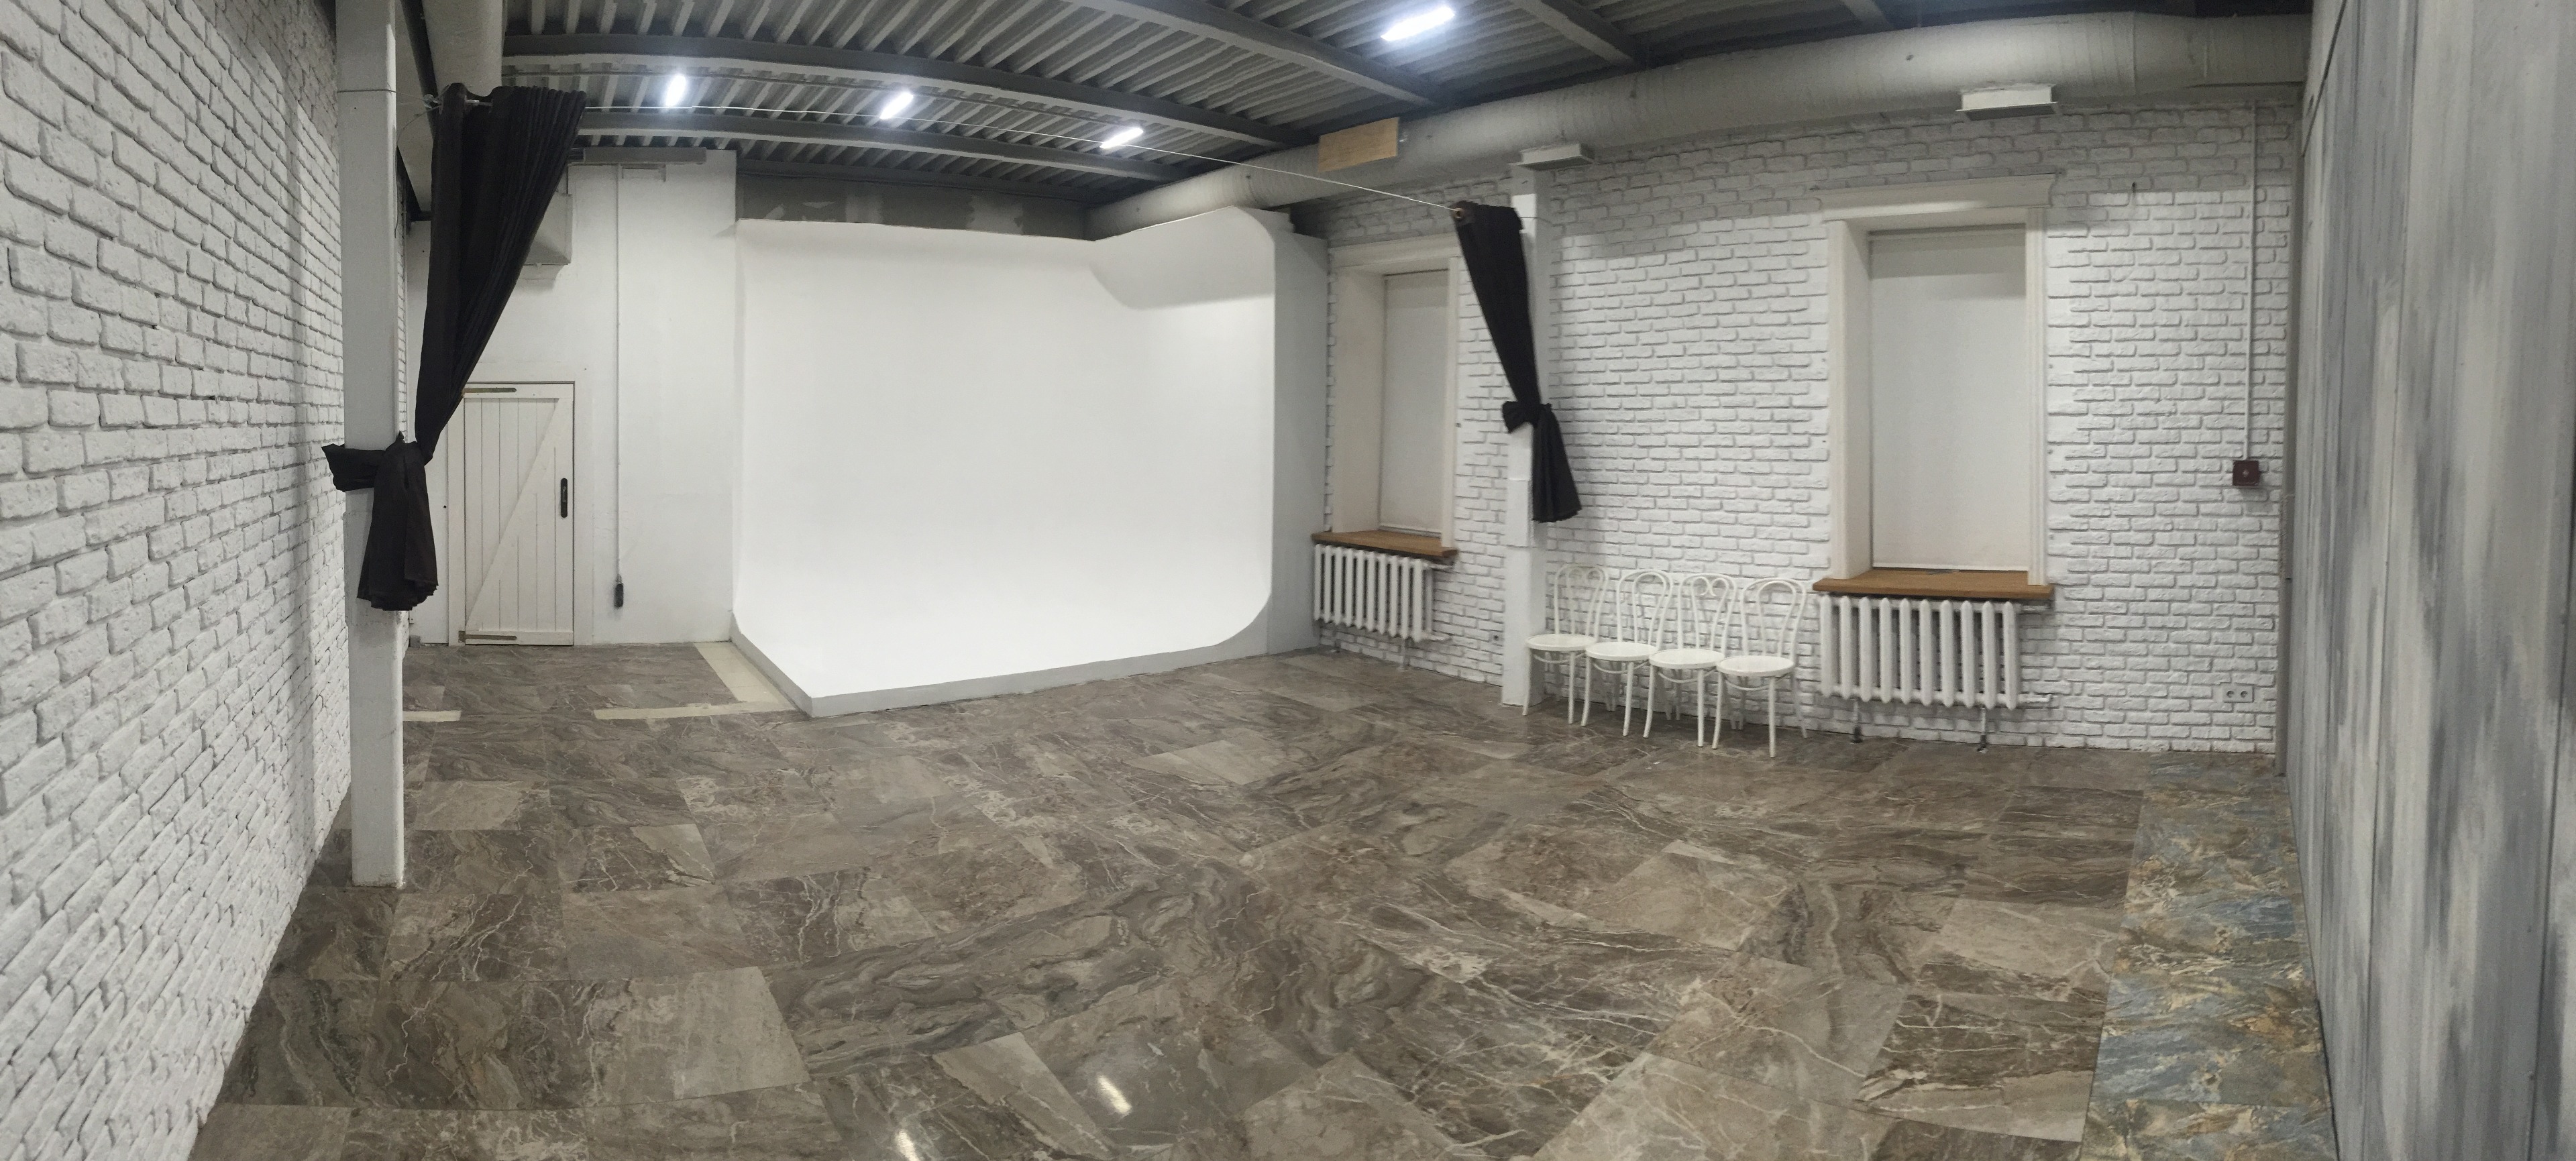 Новый город аренда. Фотостудии на Китай городе. Фотостудия плитка на полу. Белый зал в эксперте.